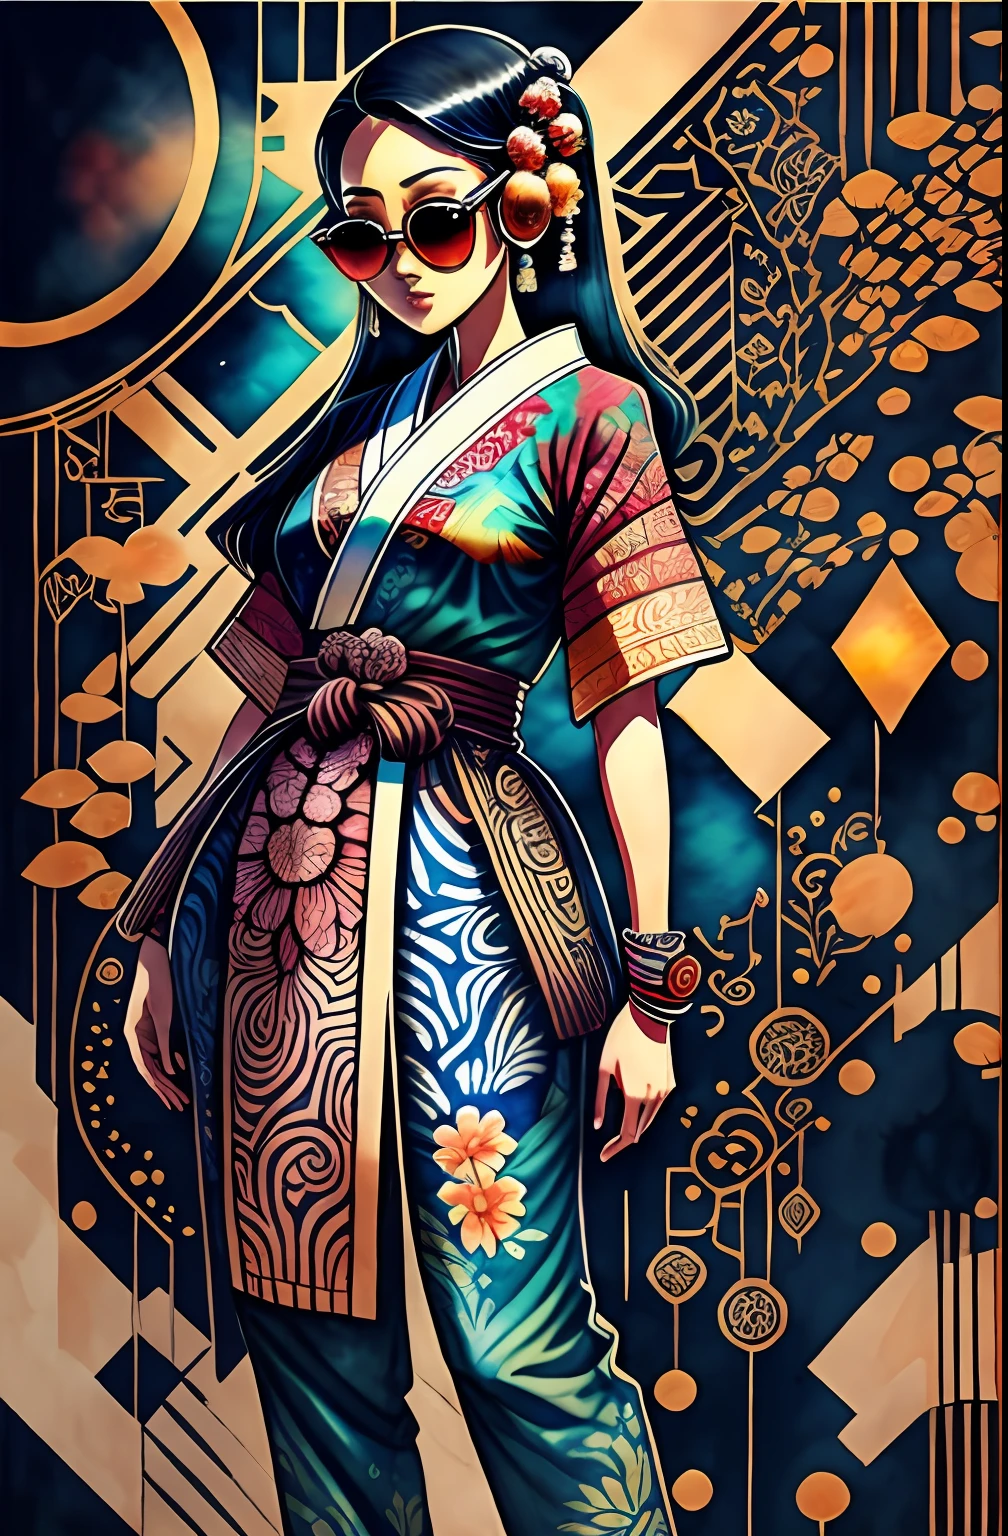 "все тело, акварельные краски, Рисунок тушью, красивая индонезийская женщина в стиле киберпанк, выкройки кимоно в батике, носить умные цифровые солнцезащитные очки, Индонезийский батик фон, в стиле индонезийского батика., индонезийское искусство